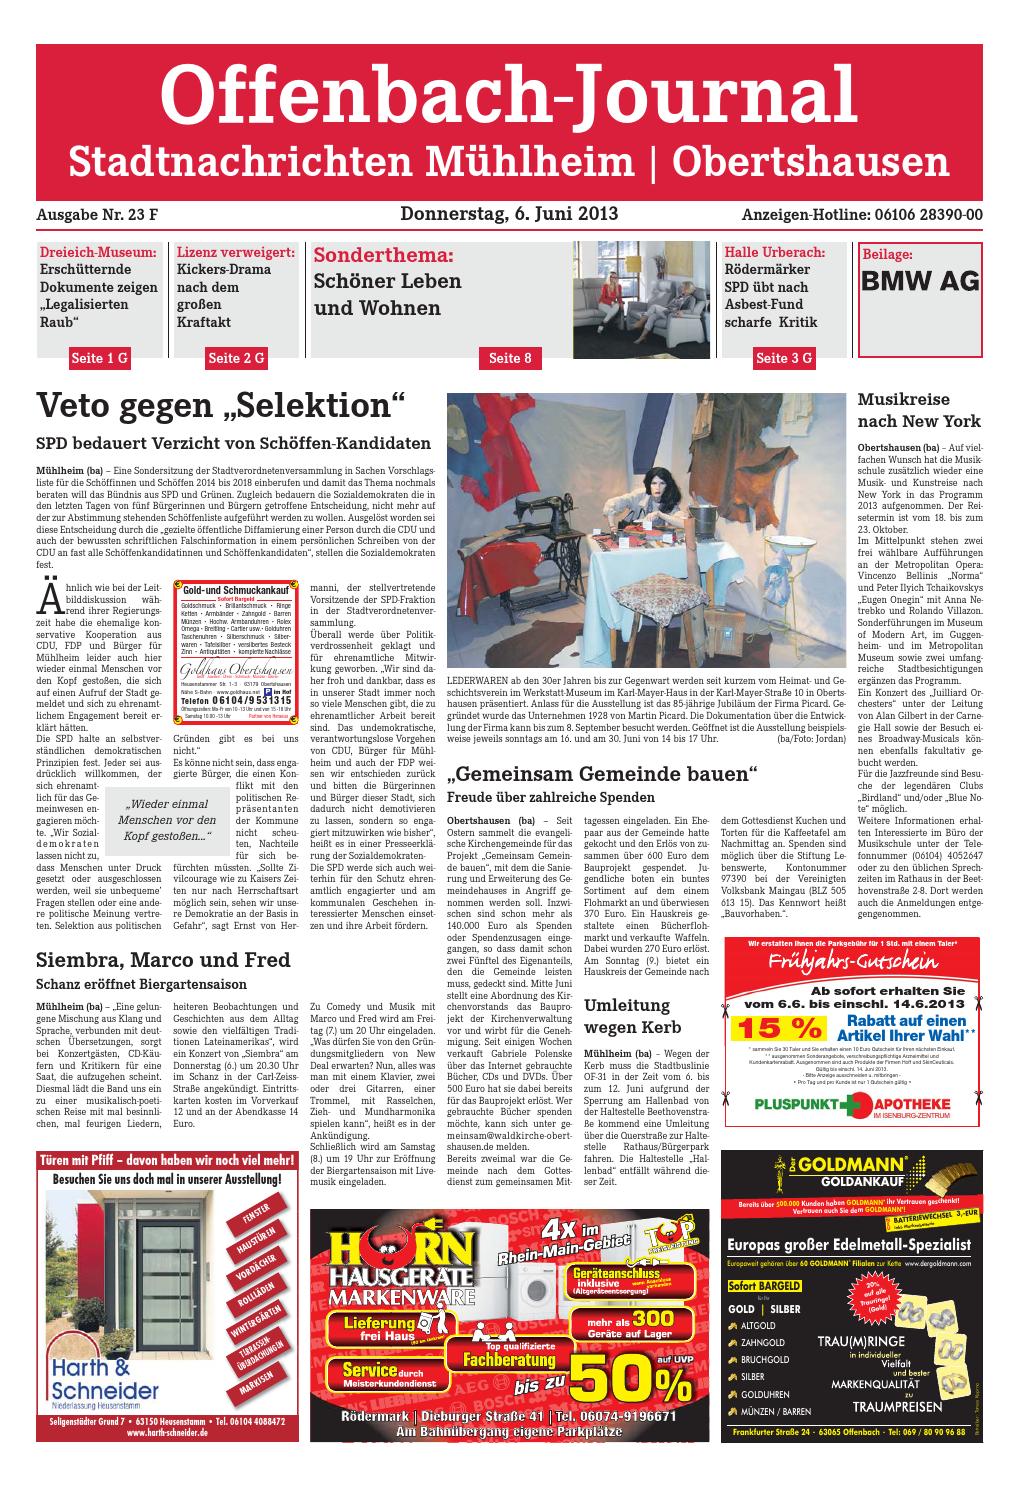 Rostiges Herz Genial Dz Online 023 13 F by Dreieich Zeitung Fenbach Journal issuu